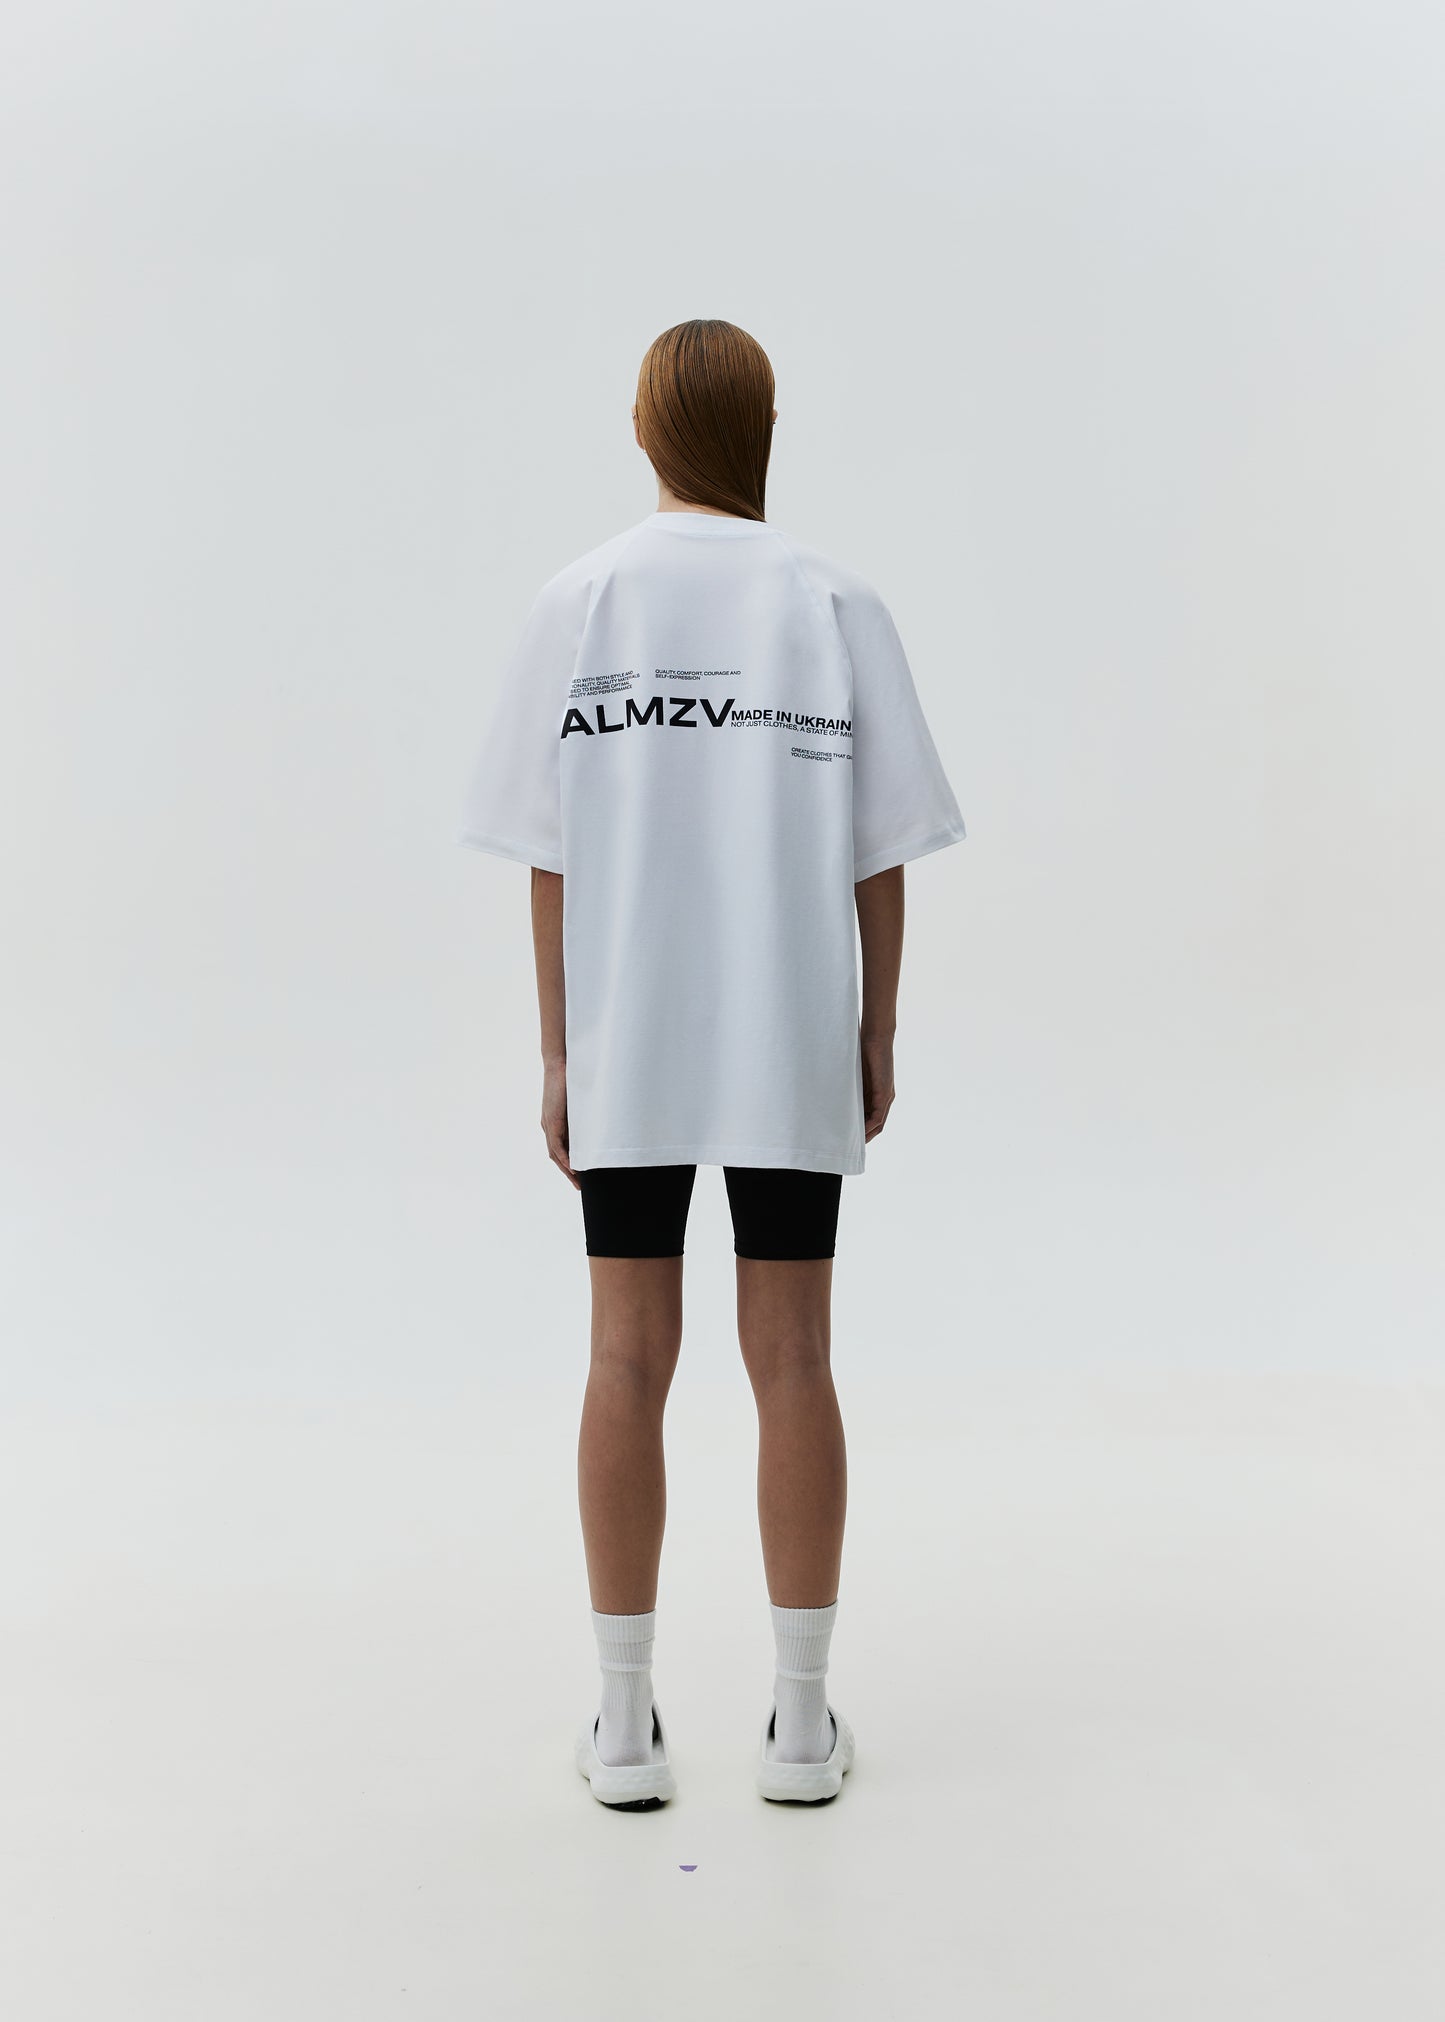 T-shirt ALMZV White